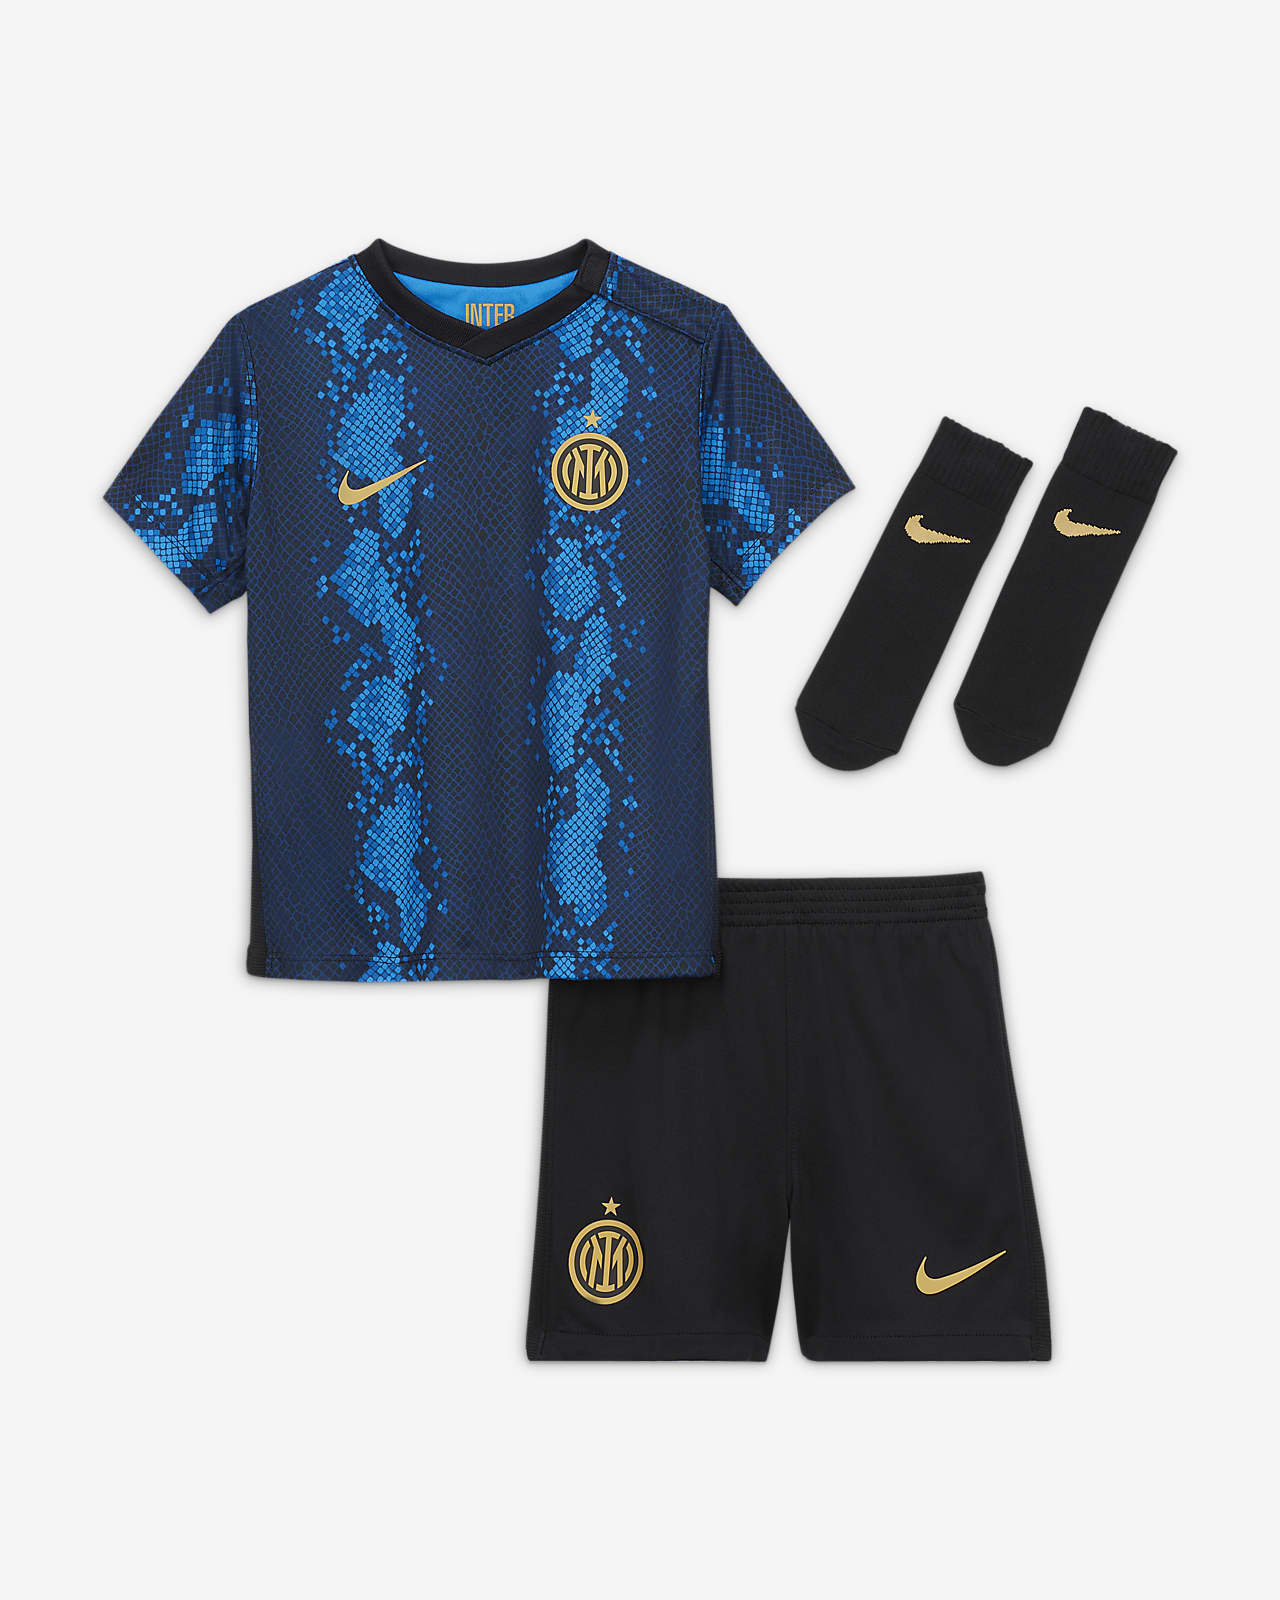 Inter Milan 2021/22 Home Baby & Toddler Football Kit